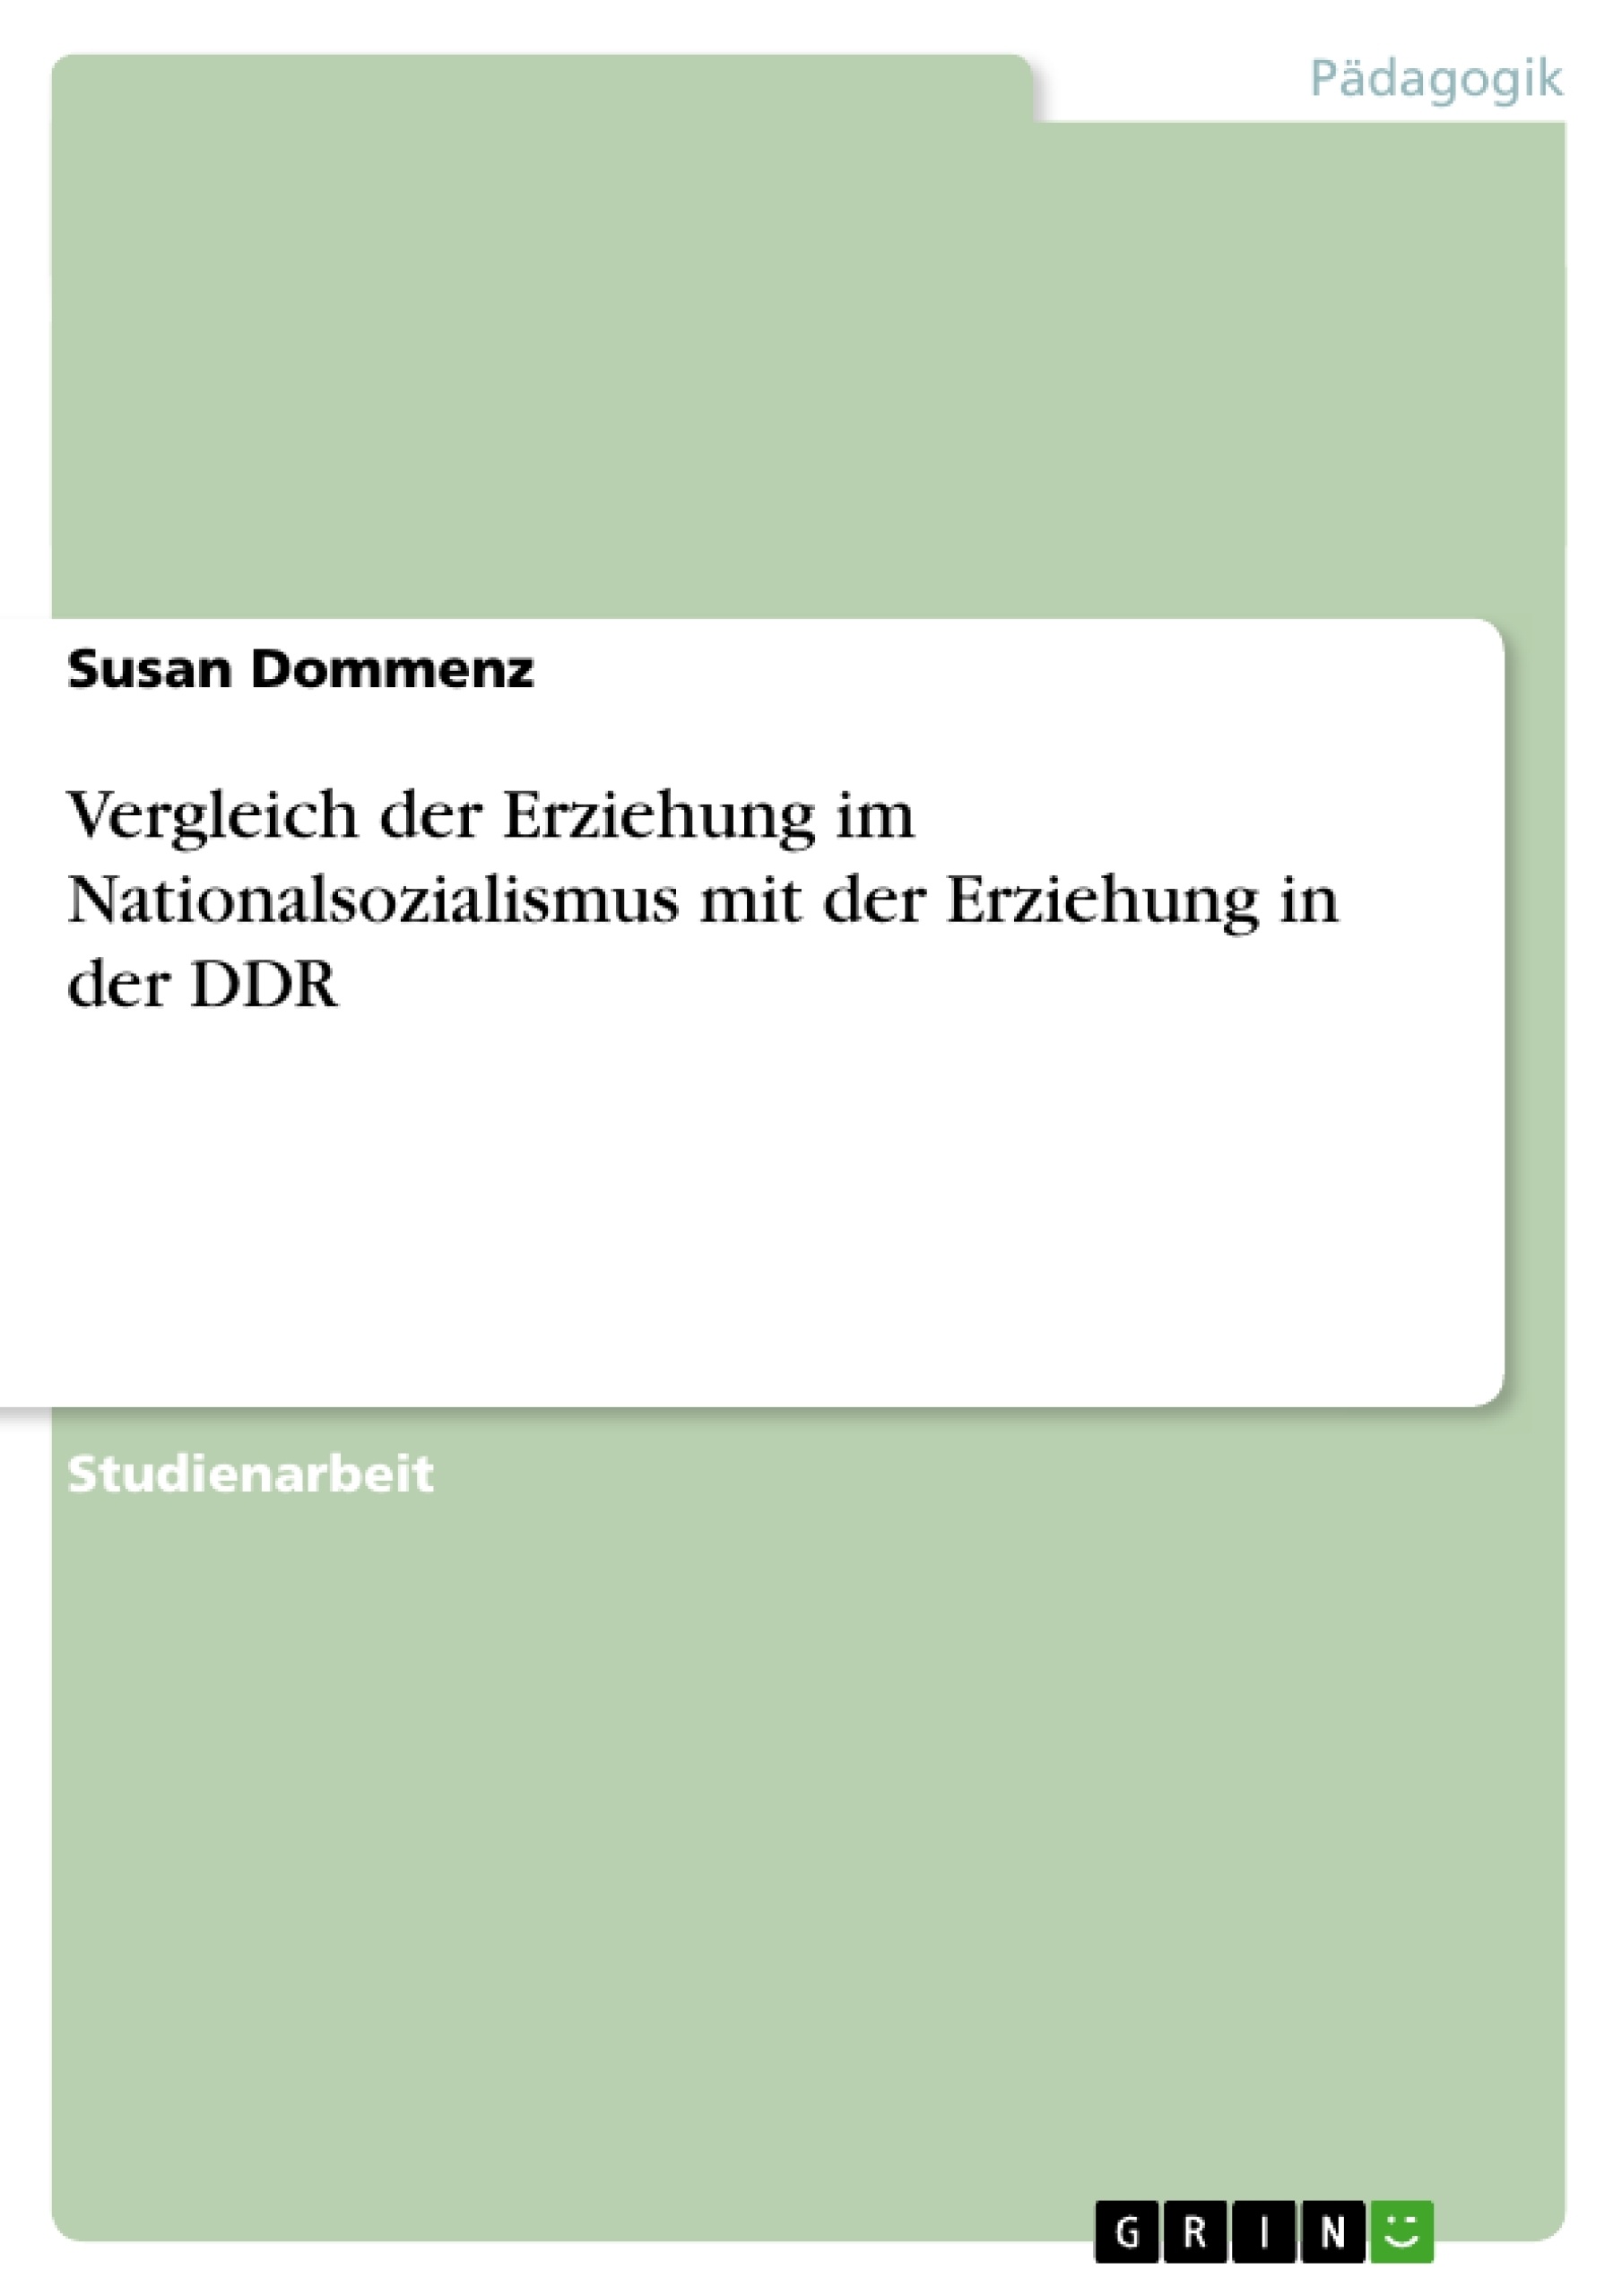 Title: Vergleich der Erziehung im Nationalsozialismus mit der Erziehung in der DDR